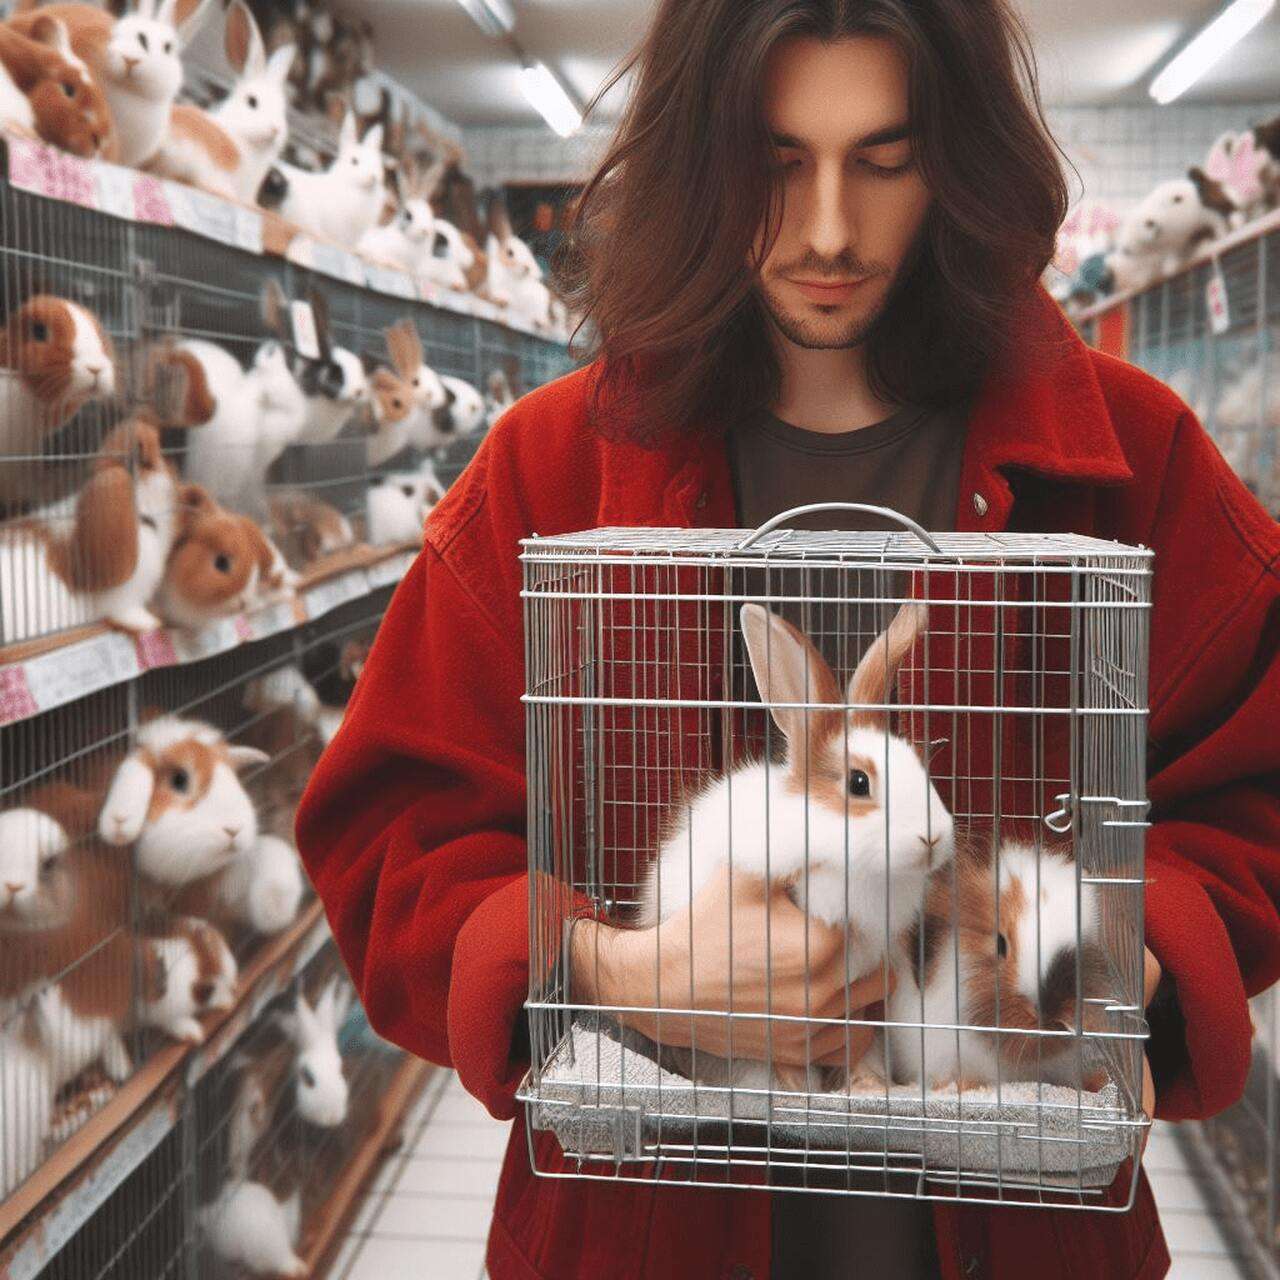 Um rapaz de vermelho, em uma loja de coelhos escolhendo dois em um gaiola.